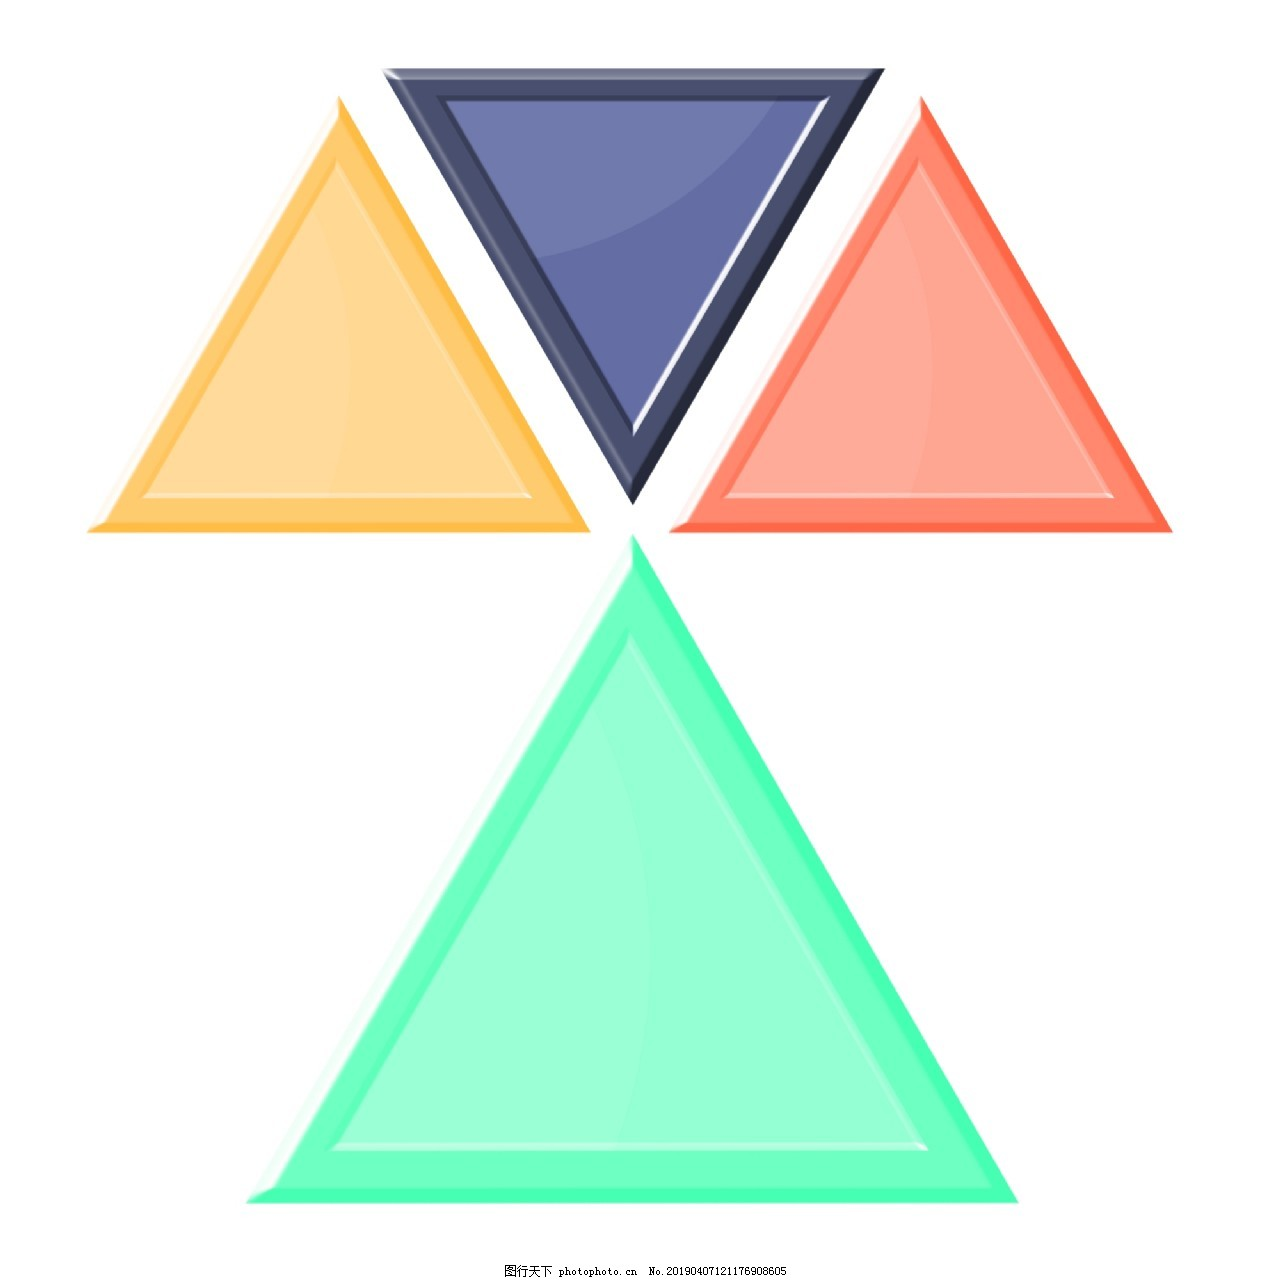 ‘~三角形PPT图标图片_PPT元素_平面创作元素-  ~’ 的图片